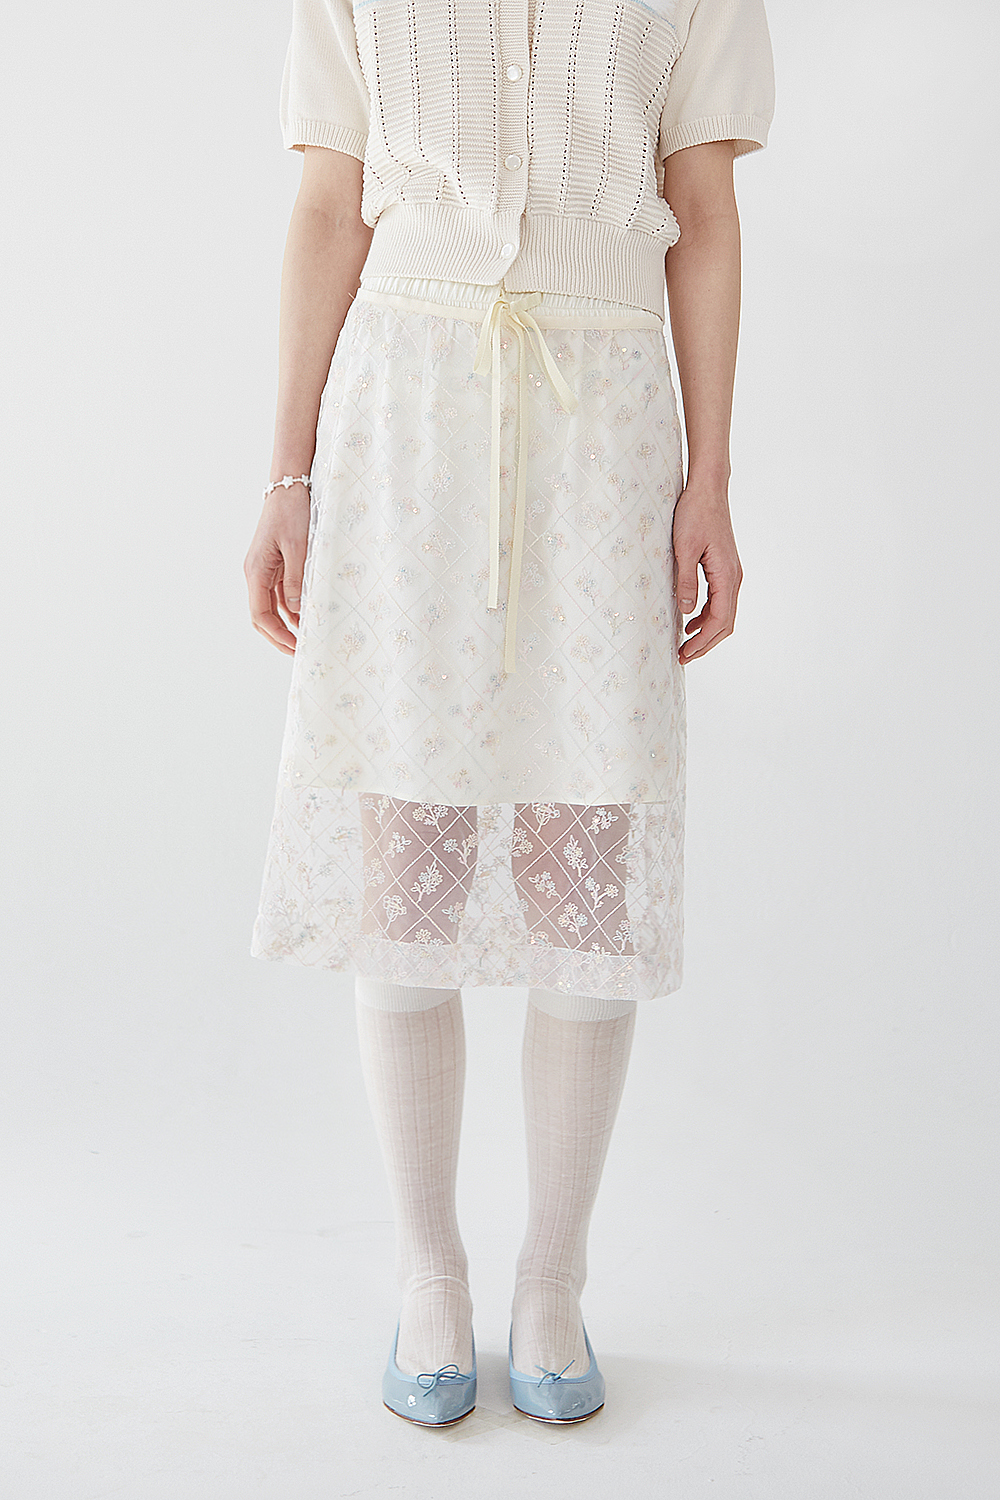 Greta layerd skirt (2 ways)